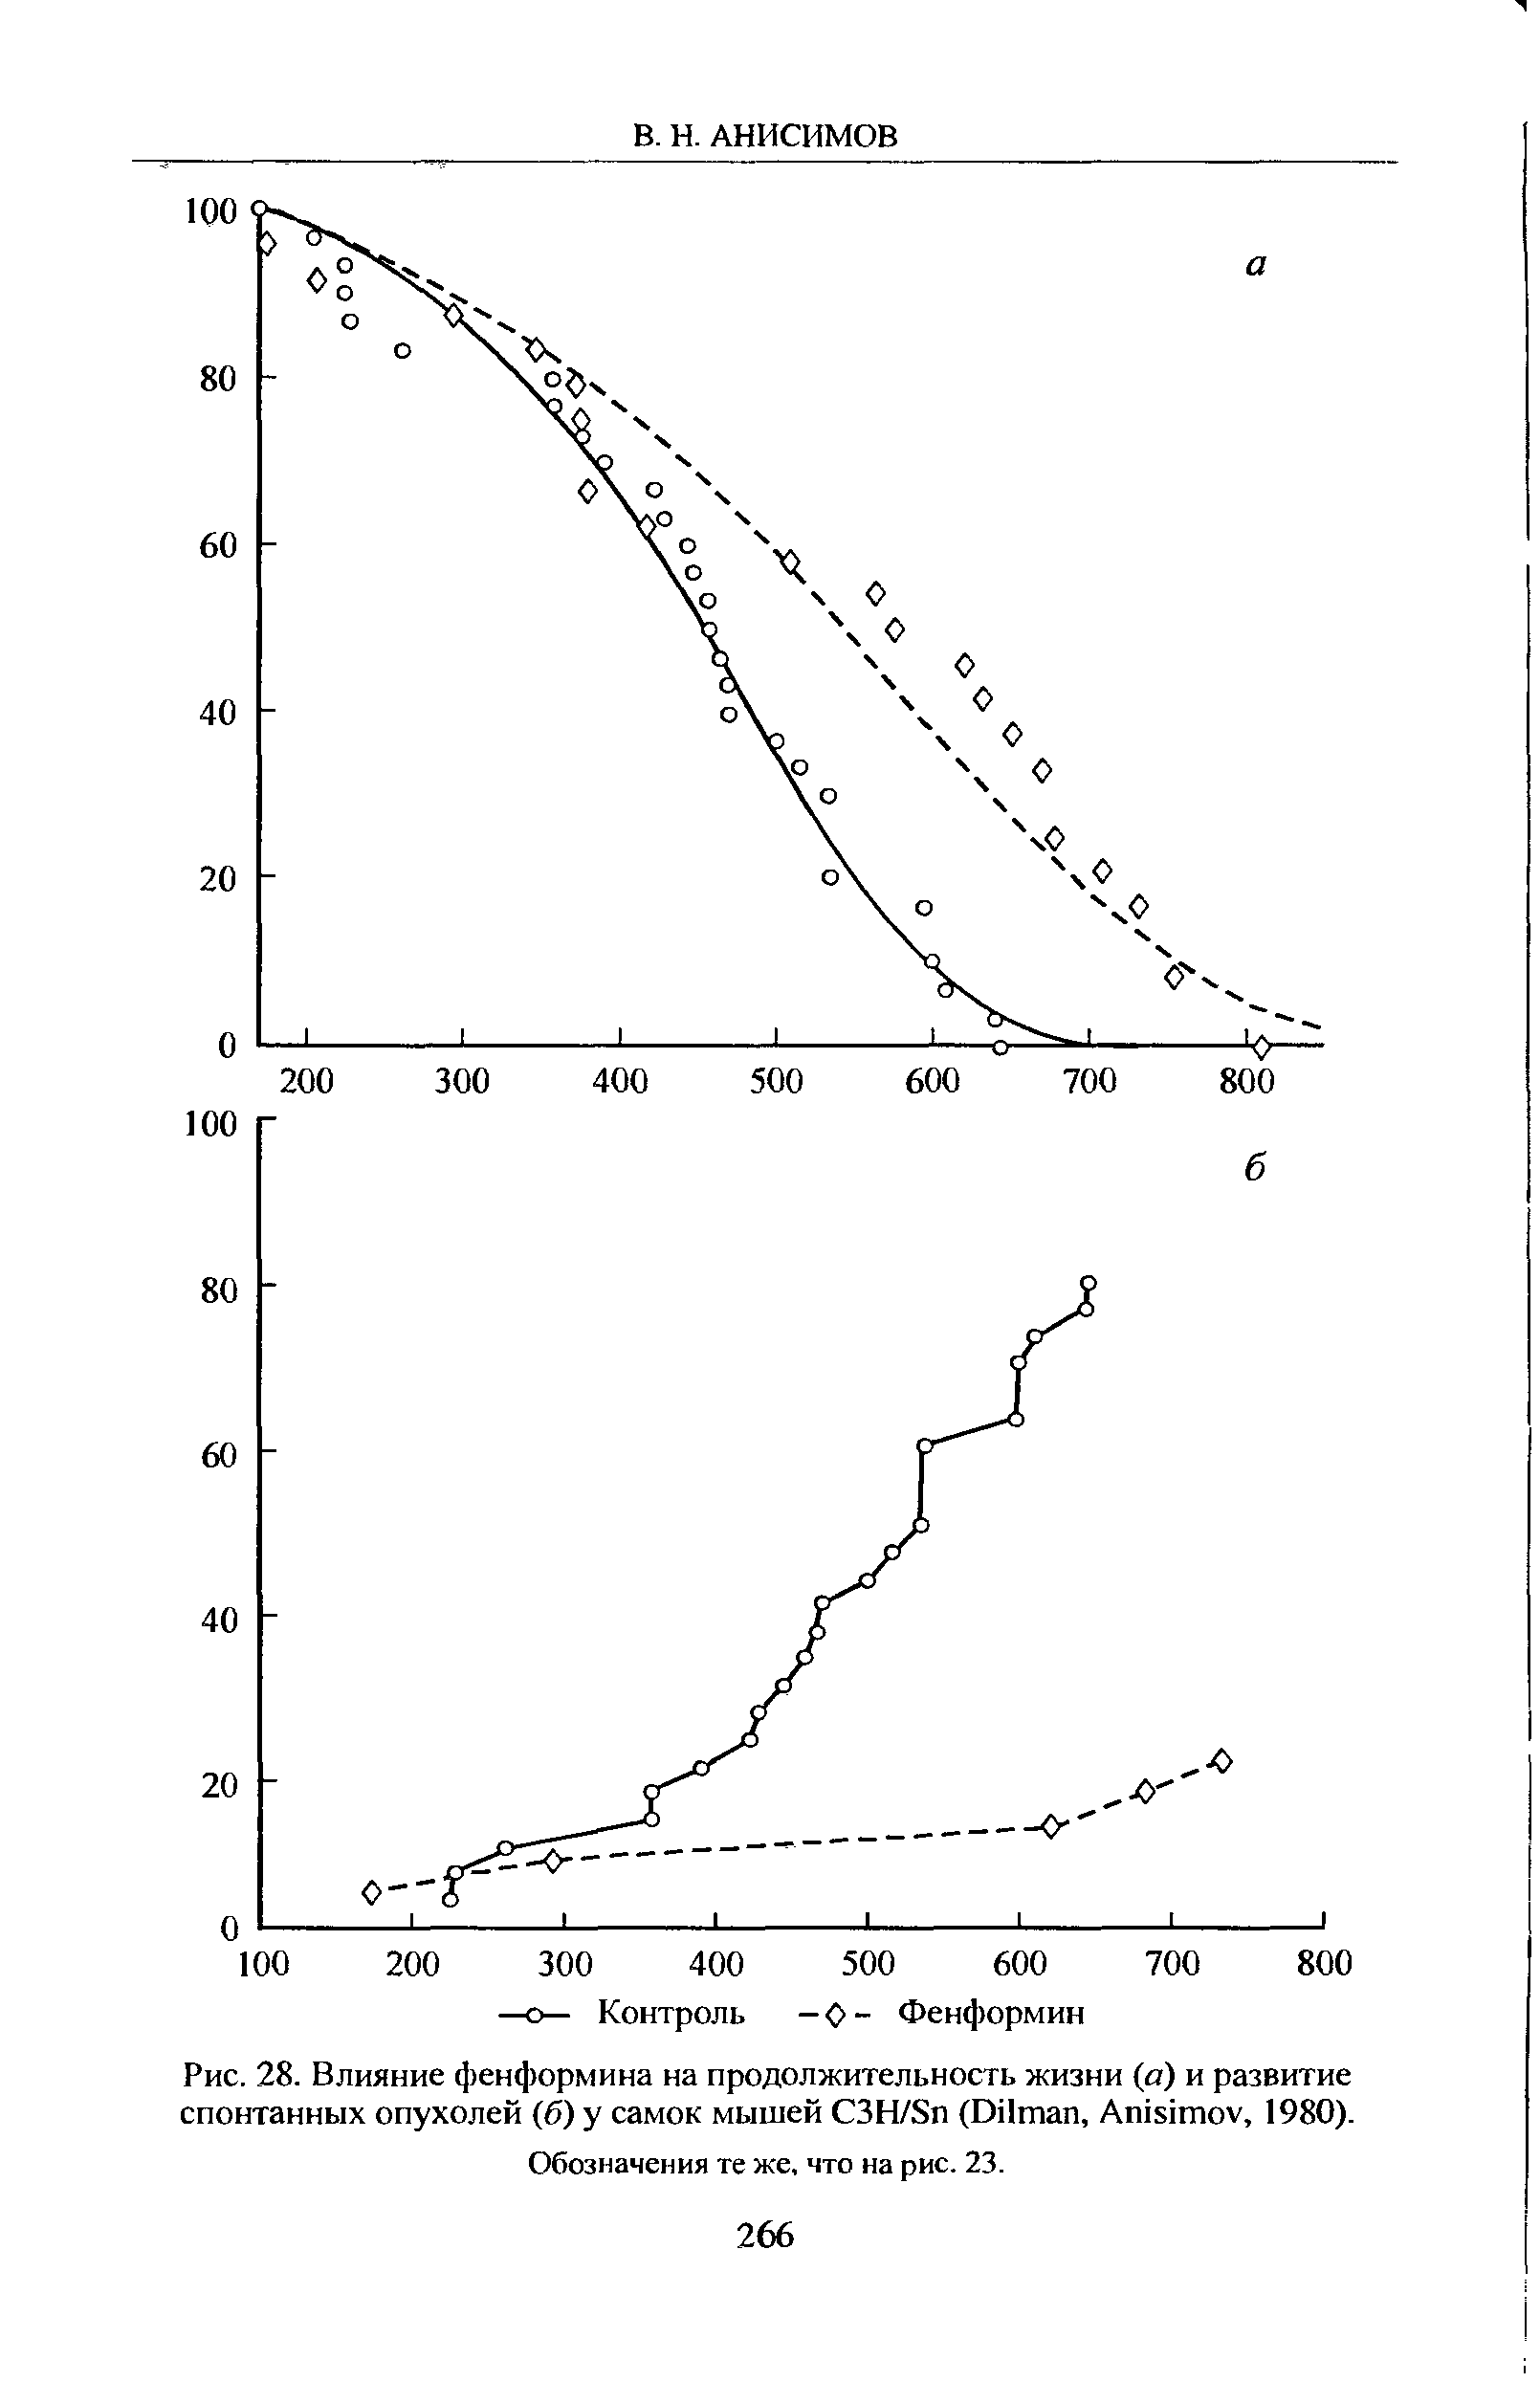 Рис. 28. Влияние фенформина на продолжительность жизни (а) и развитие спонтанных опухолей (б) у самок мышей C3H/S (D , A , 1980).